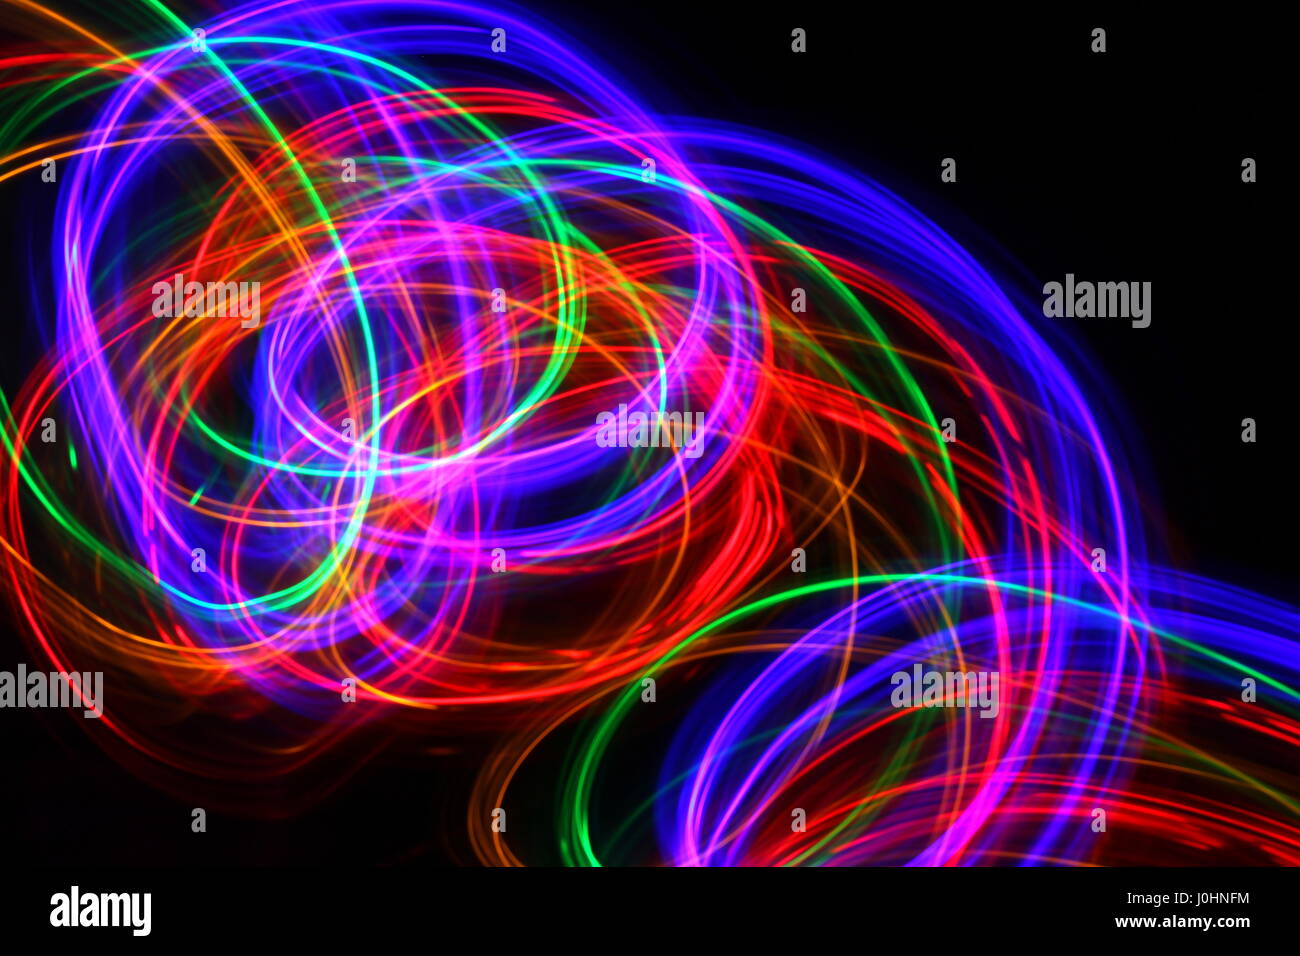 Licht Malerei Foto von mehrfarbigen Lichterketten in einem Strudel Muster vor einem schwarzen Hintergrund. Fotos mit langer Belichtungszeit. Neon Multi Color. Stockfoto